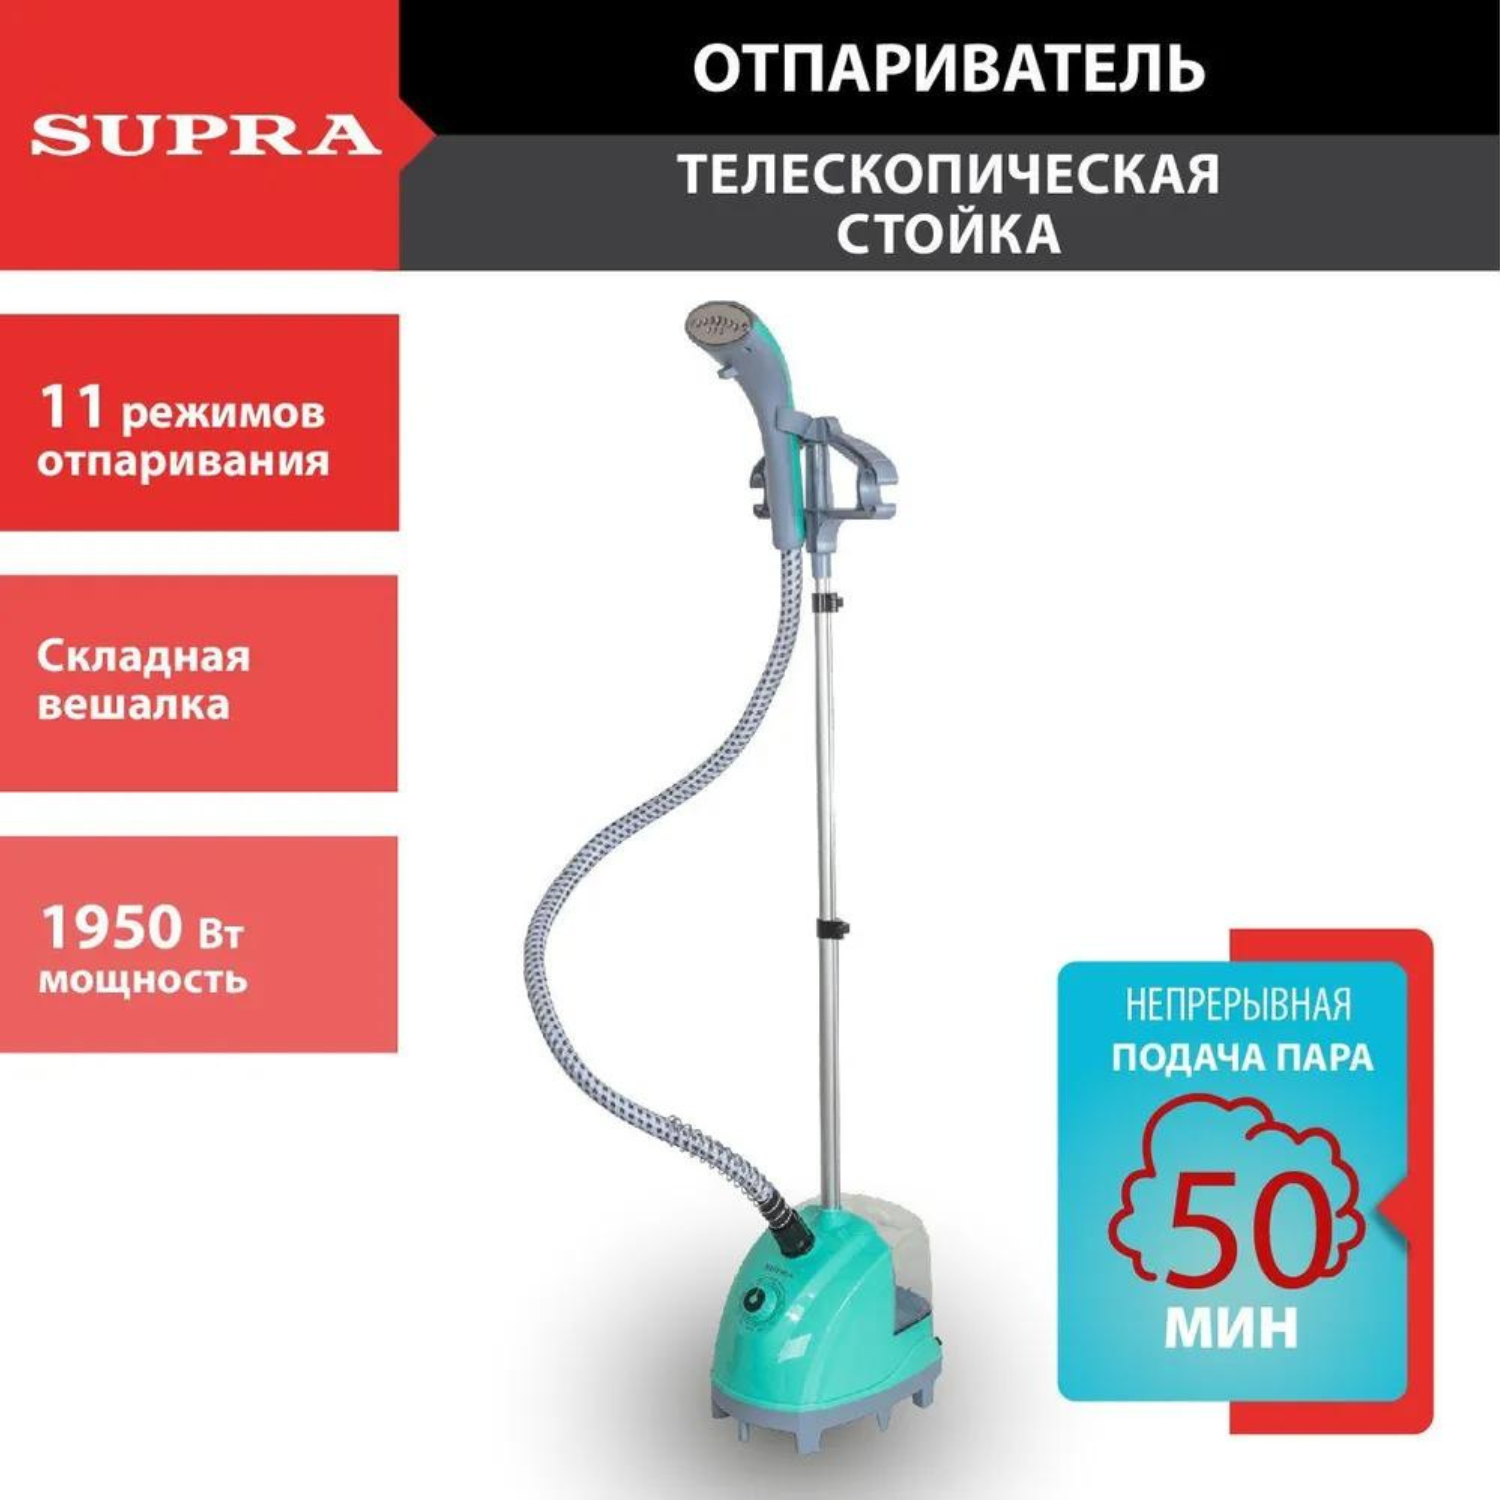 Вертикальный отпариватель Supra SBS-170 1.3 л голубой вертикальный отпариватель supra sbs 202 red